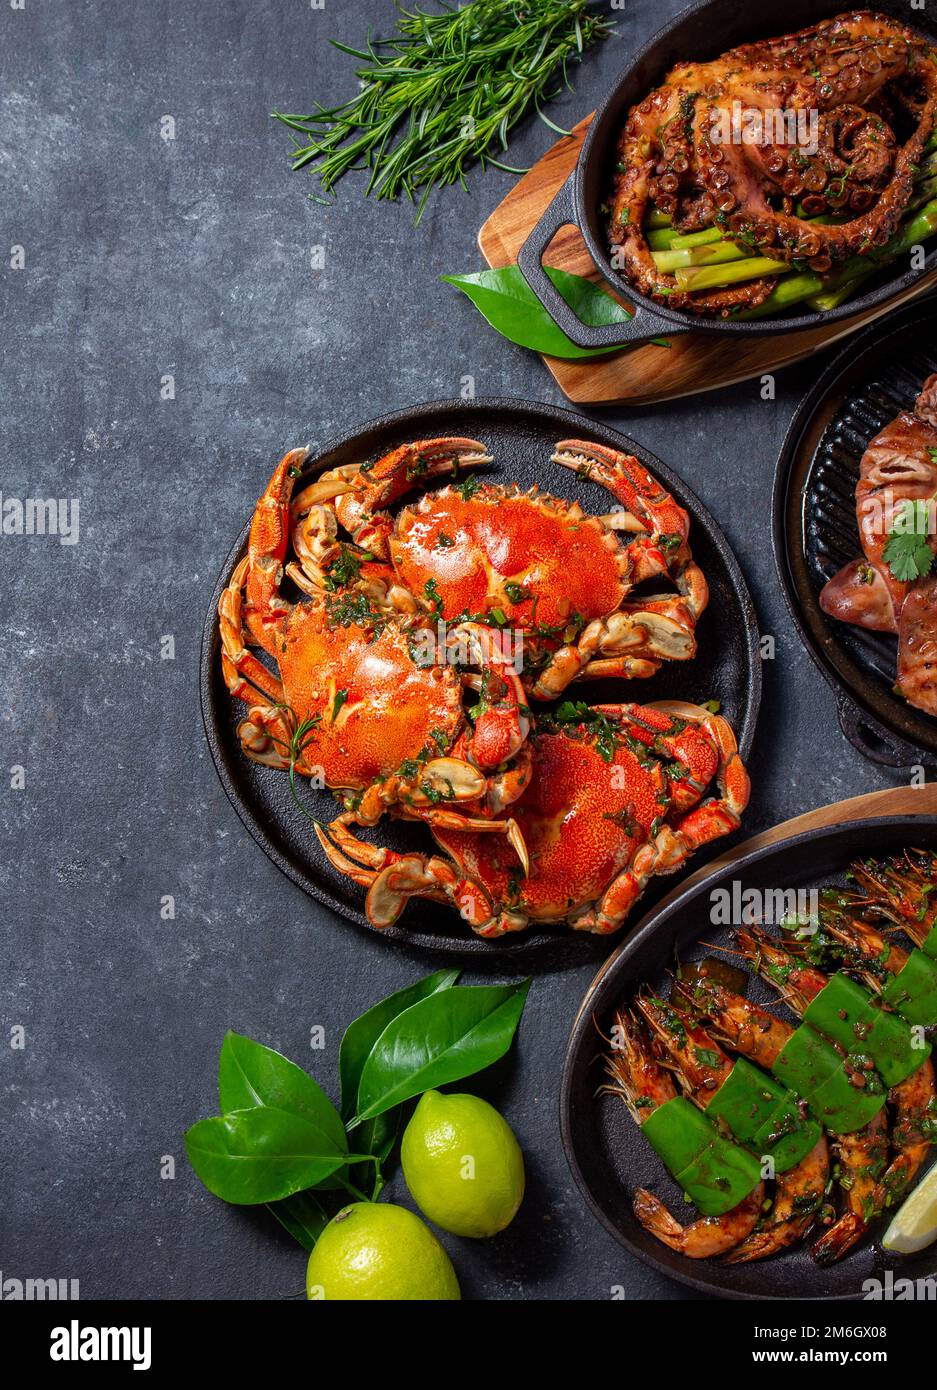 Ensemble de plats de fruits de mer. Crabes, poulpes, calmars et crevettes tigrées sur des casseroles en fonte et des assiettes sur fond noir. Vue de dessus. Copier l'espace pour le texte Banque D'Images